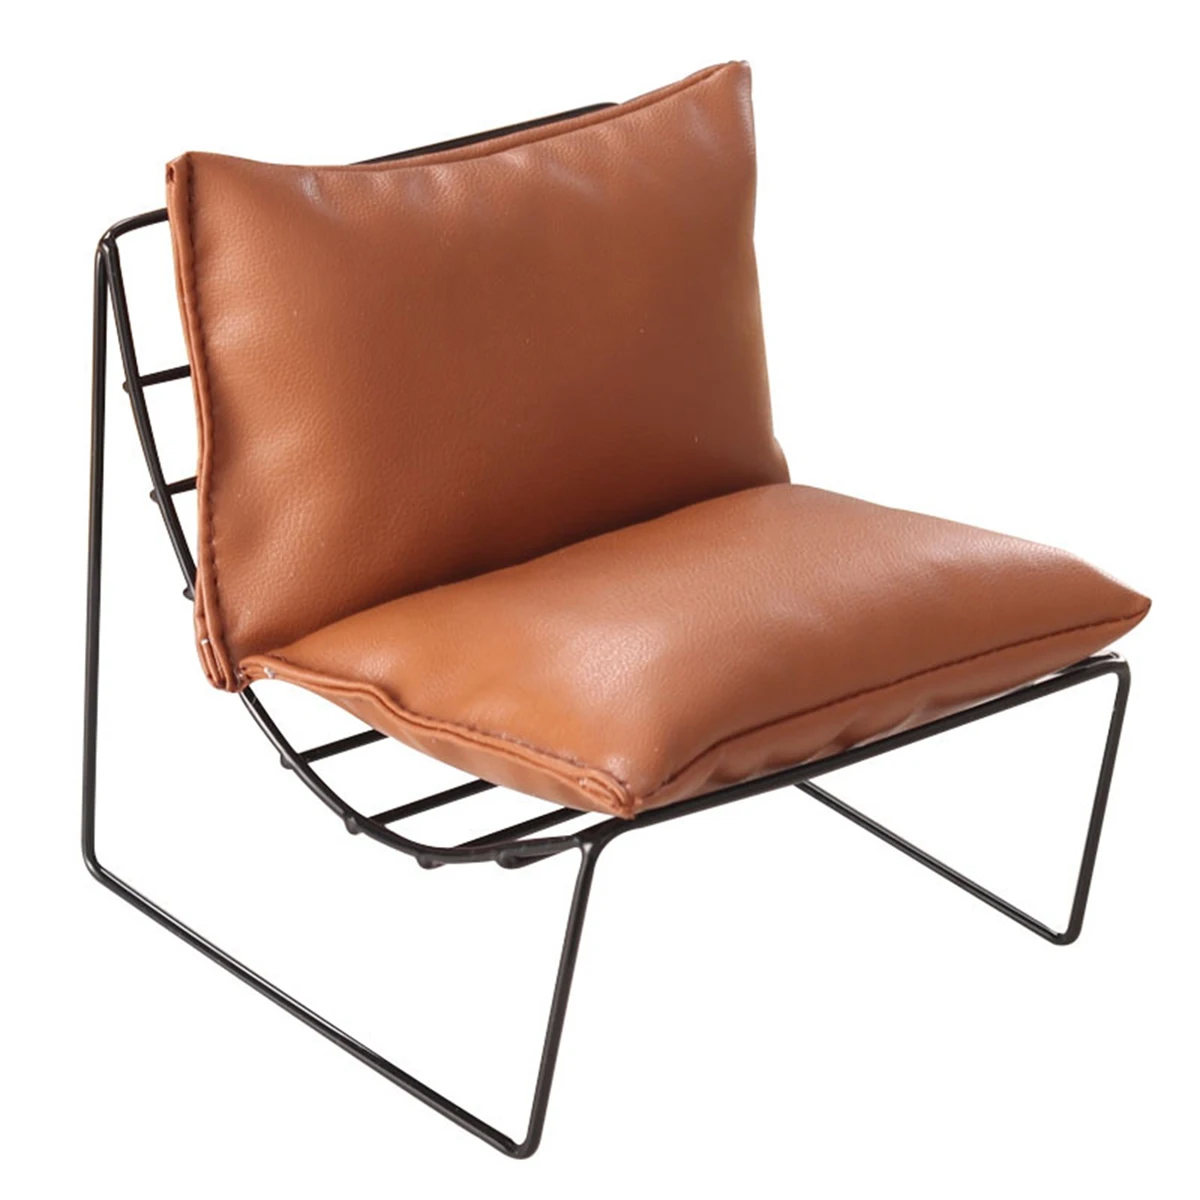 

Миниатюрное кресло Moon Chair в масштабе 1:6, кожаный мини-диван, одиночный стул для кукольного домика, аксессуары, цвет коричневый